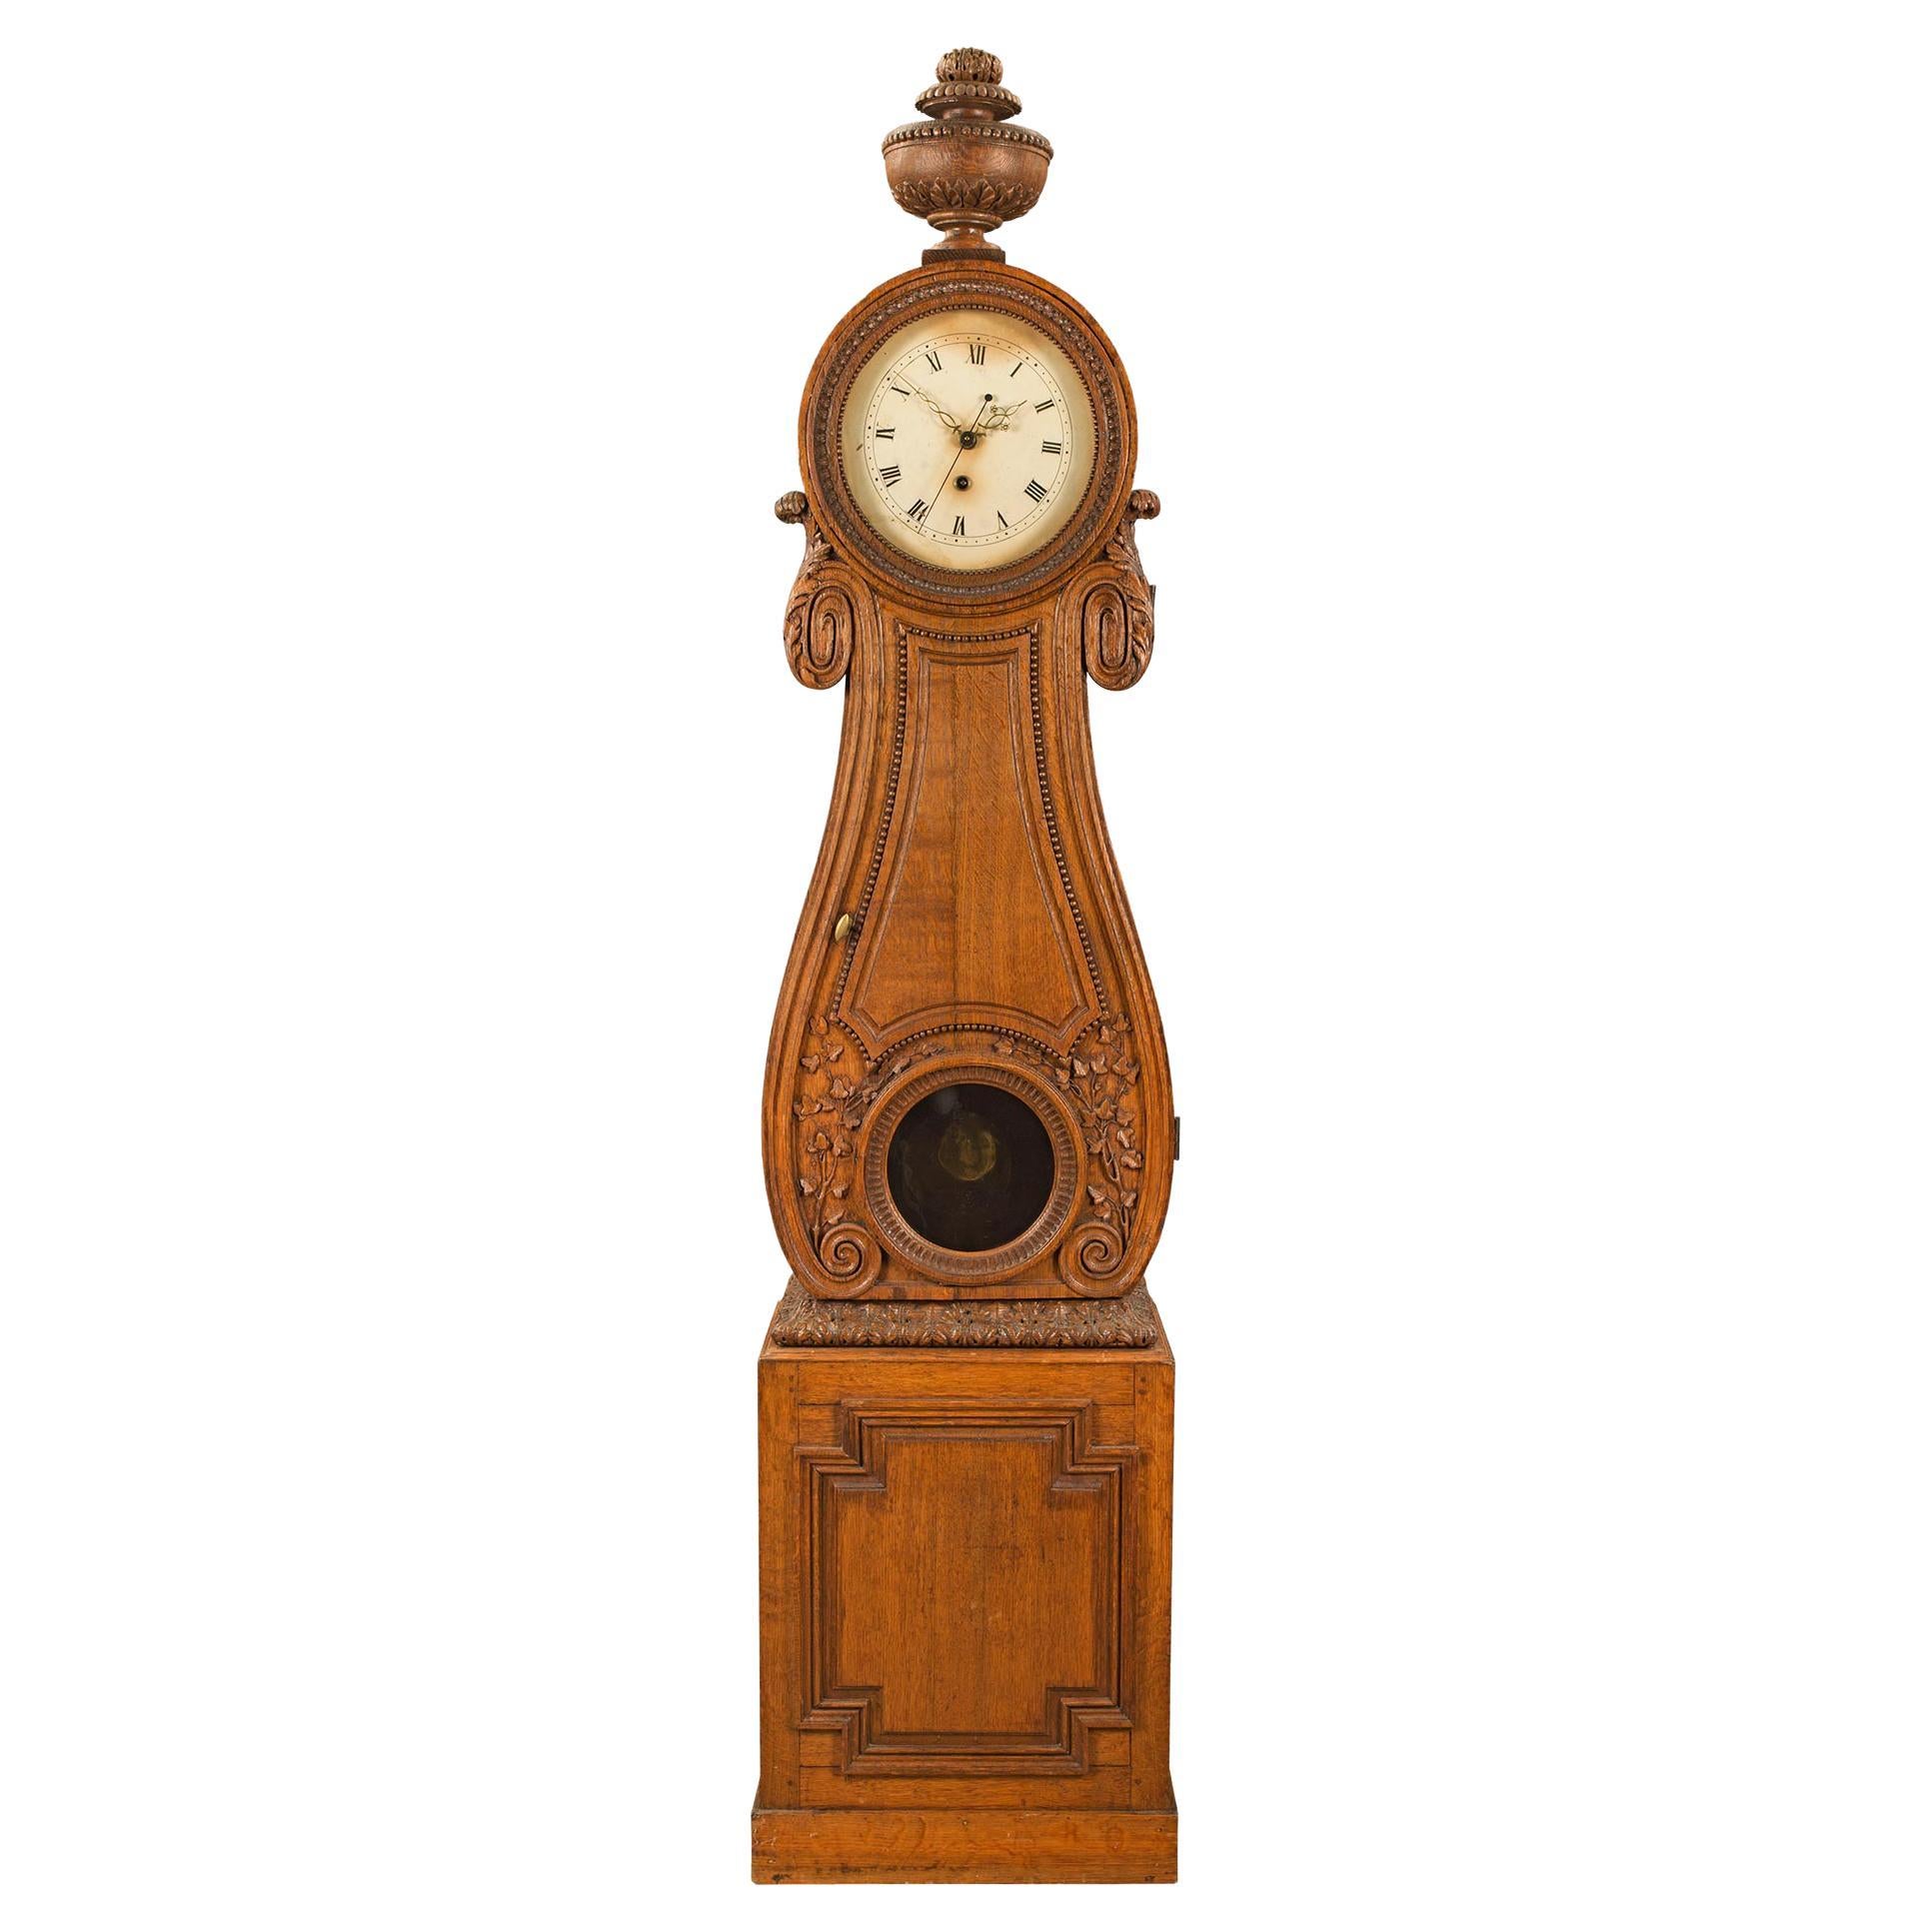 Horloge de grand-père en chêne d'époque Louis XVI du XVIIIe siècle français